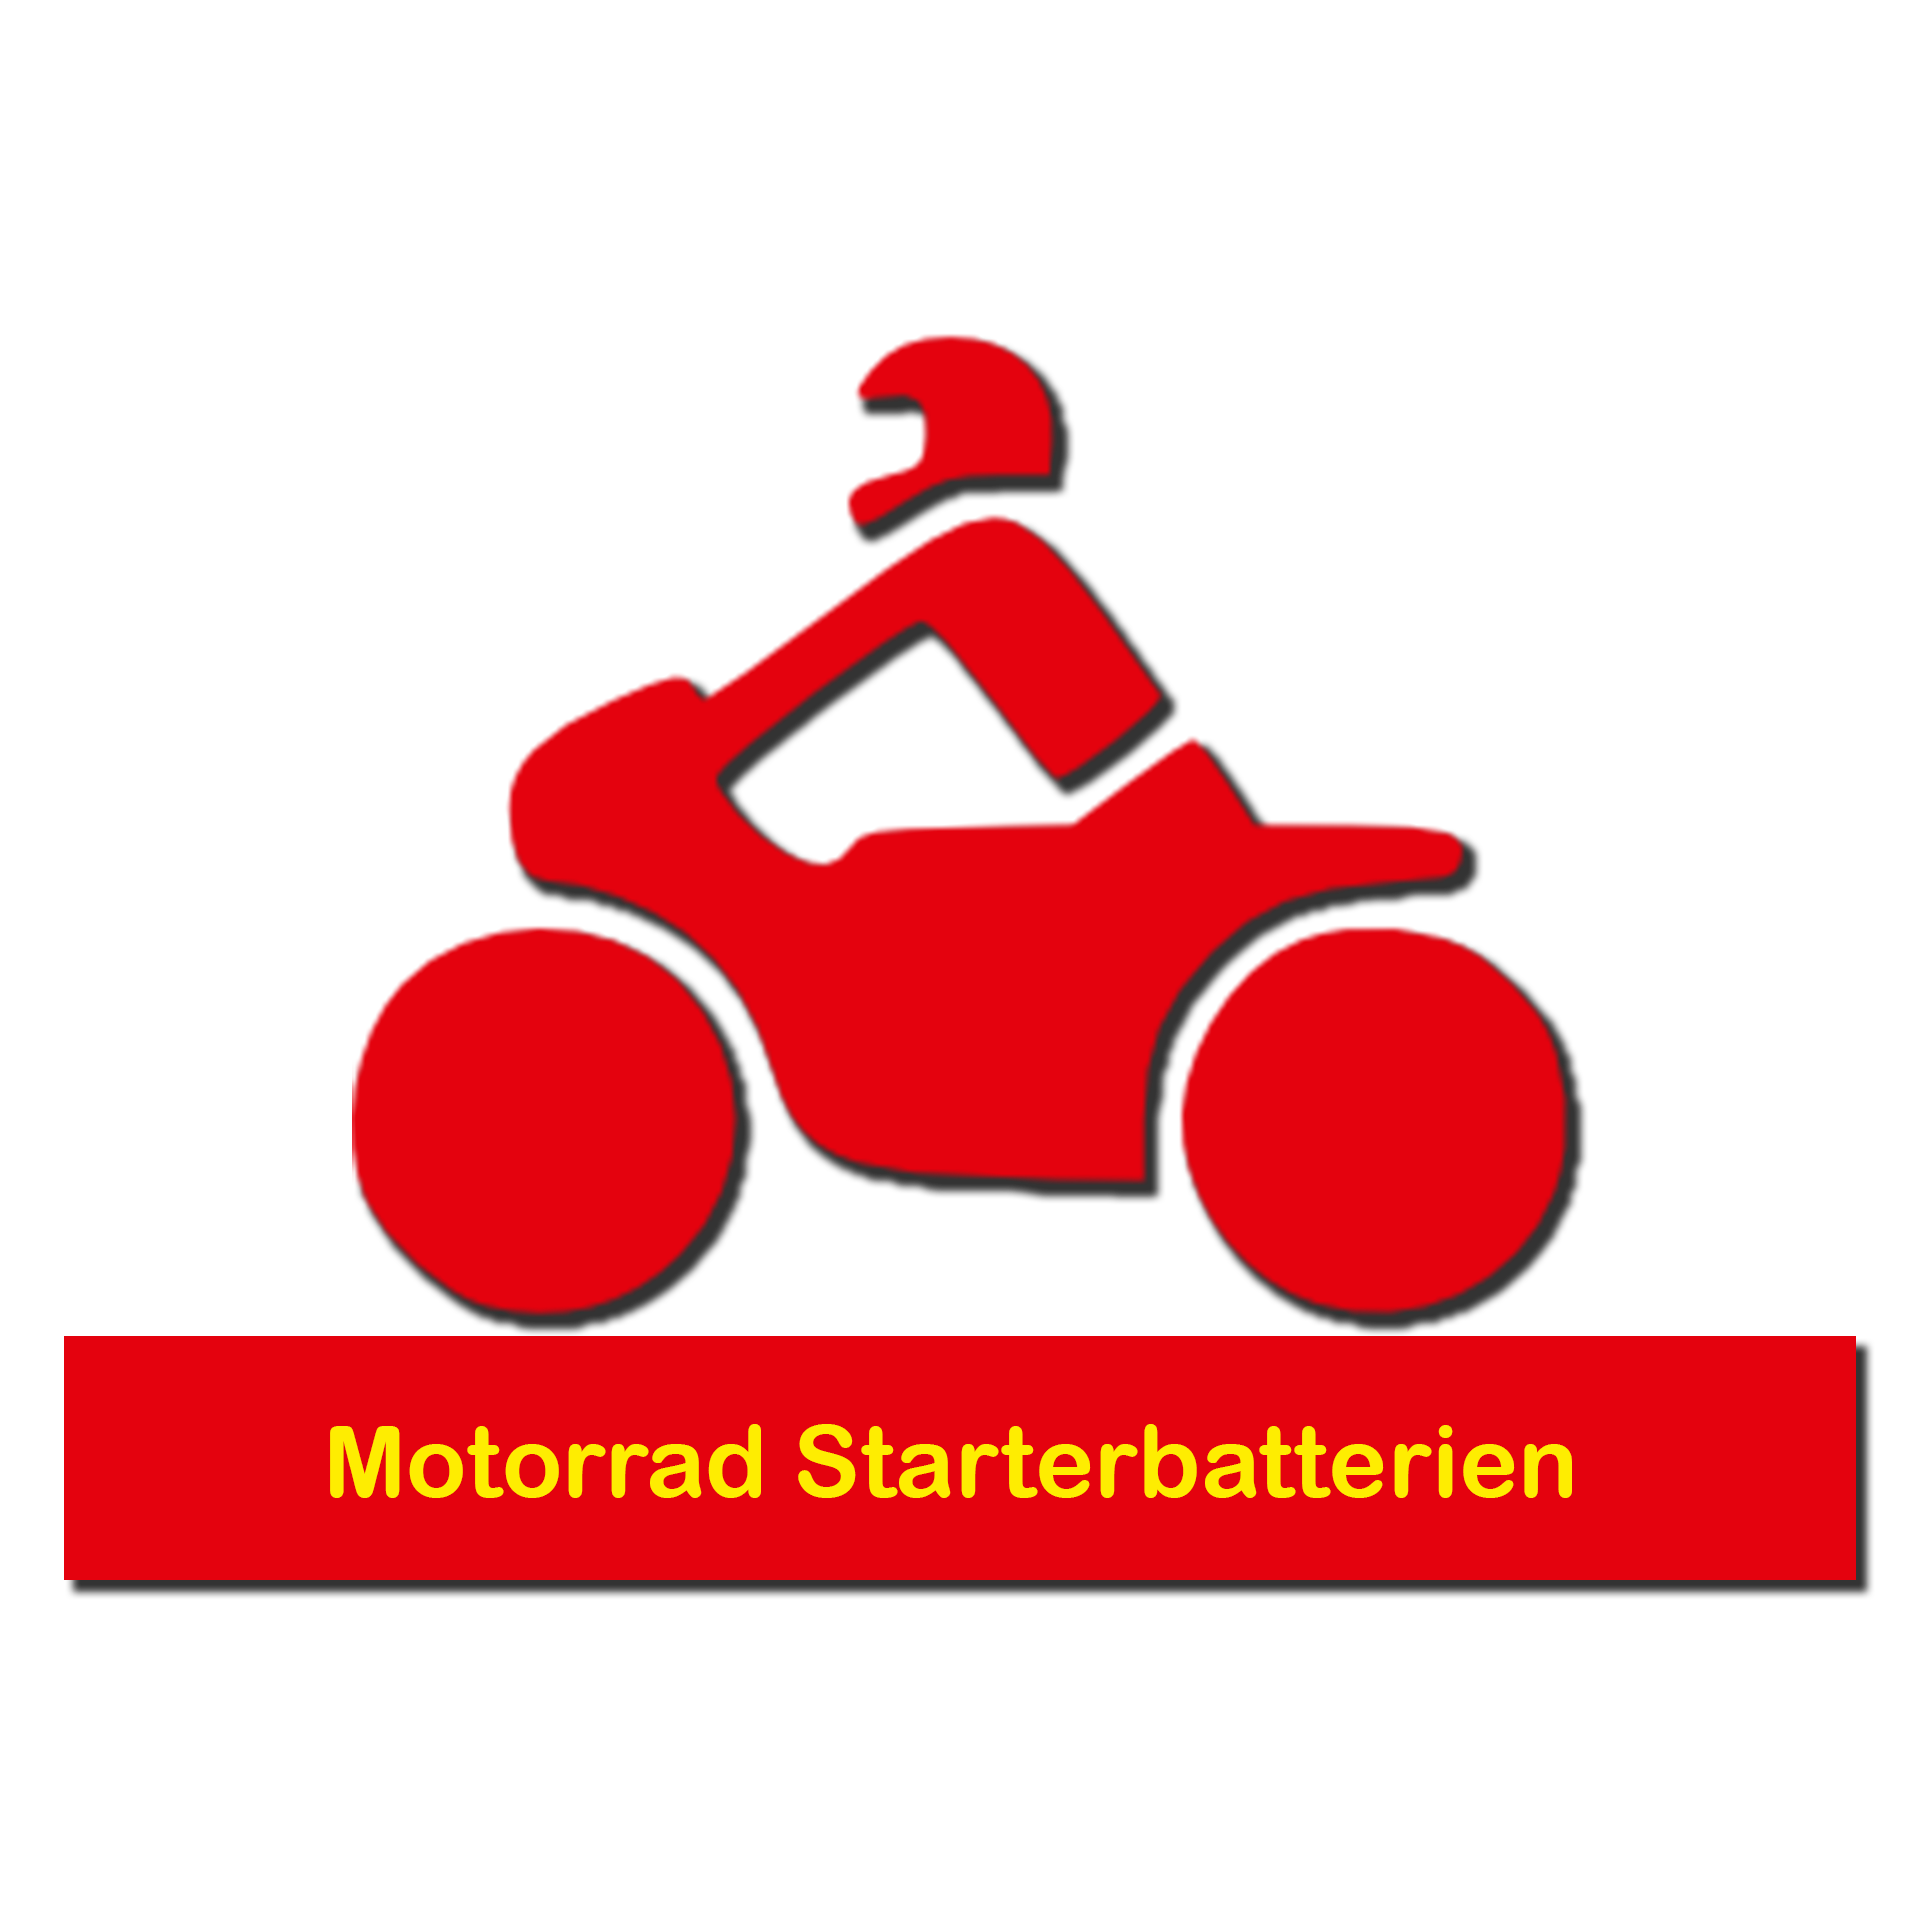 Motorrad Starterbatterien